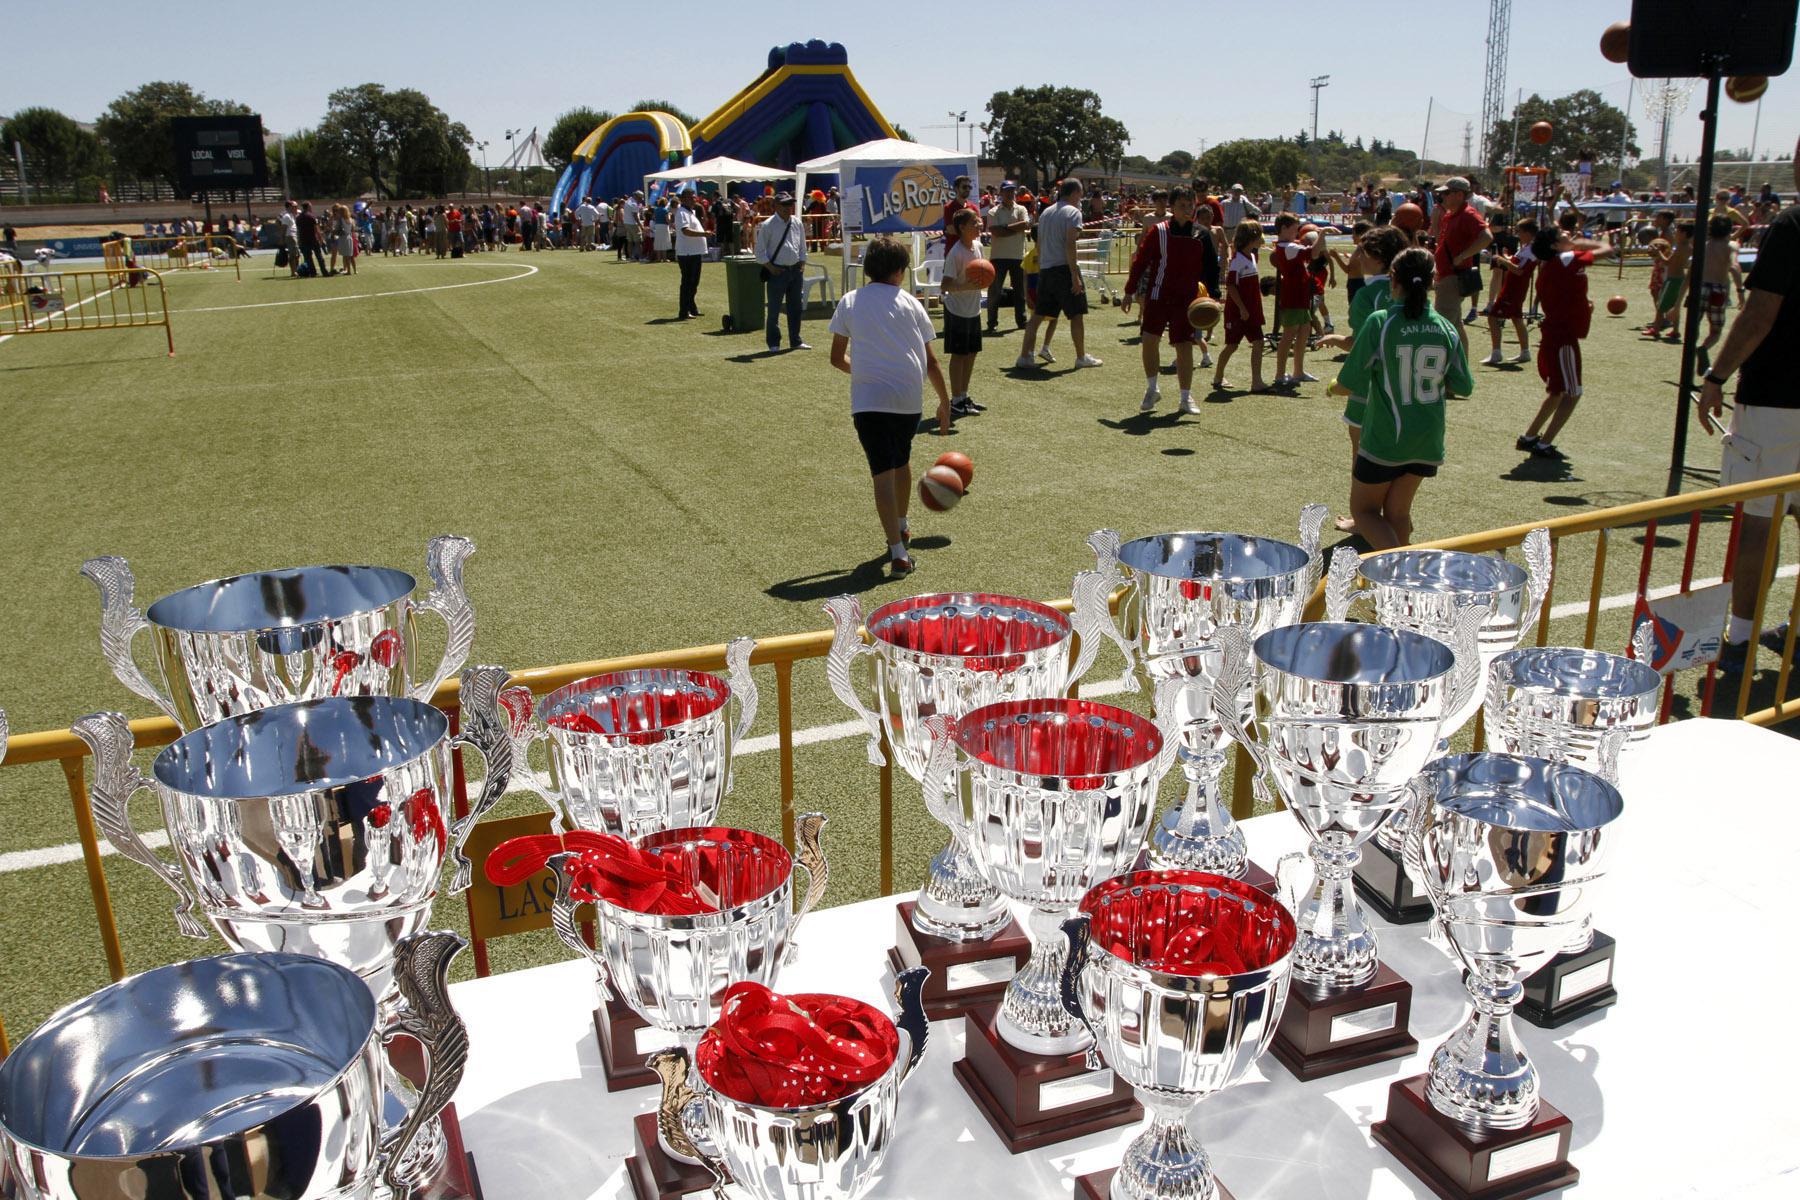 Una gran fiesta clausura este sábado las Escuelas deportivas y los Juegos municipales de Las Rozas